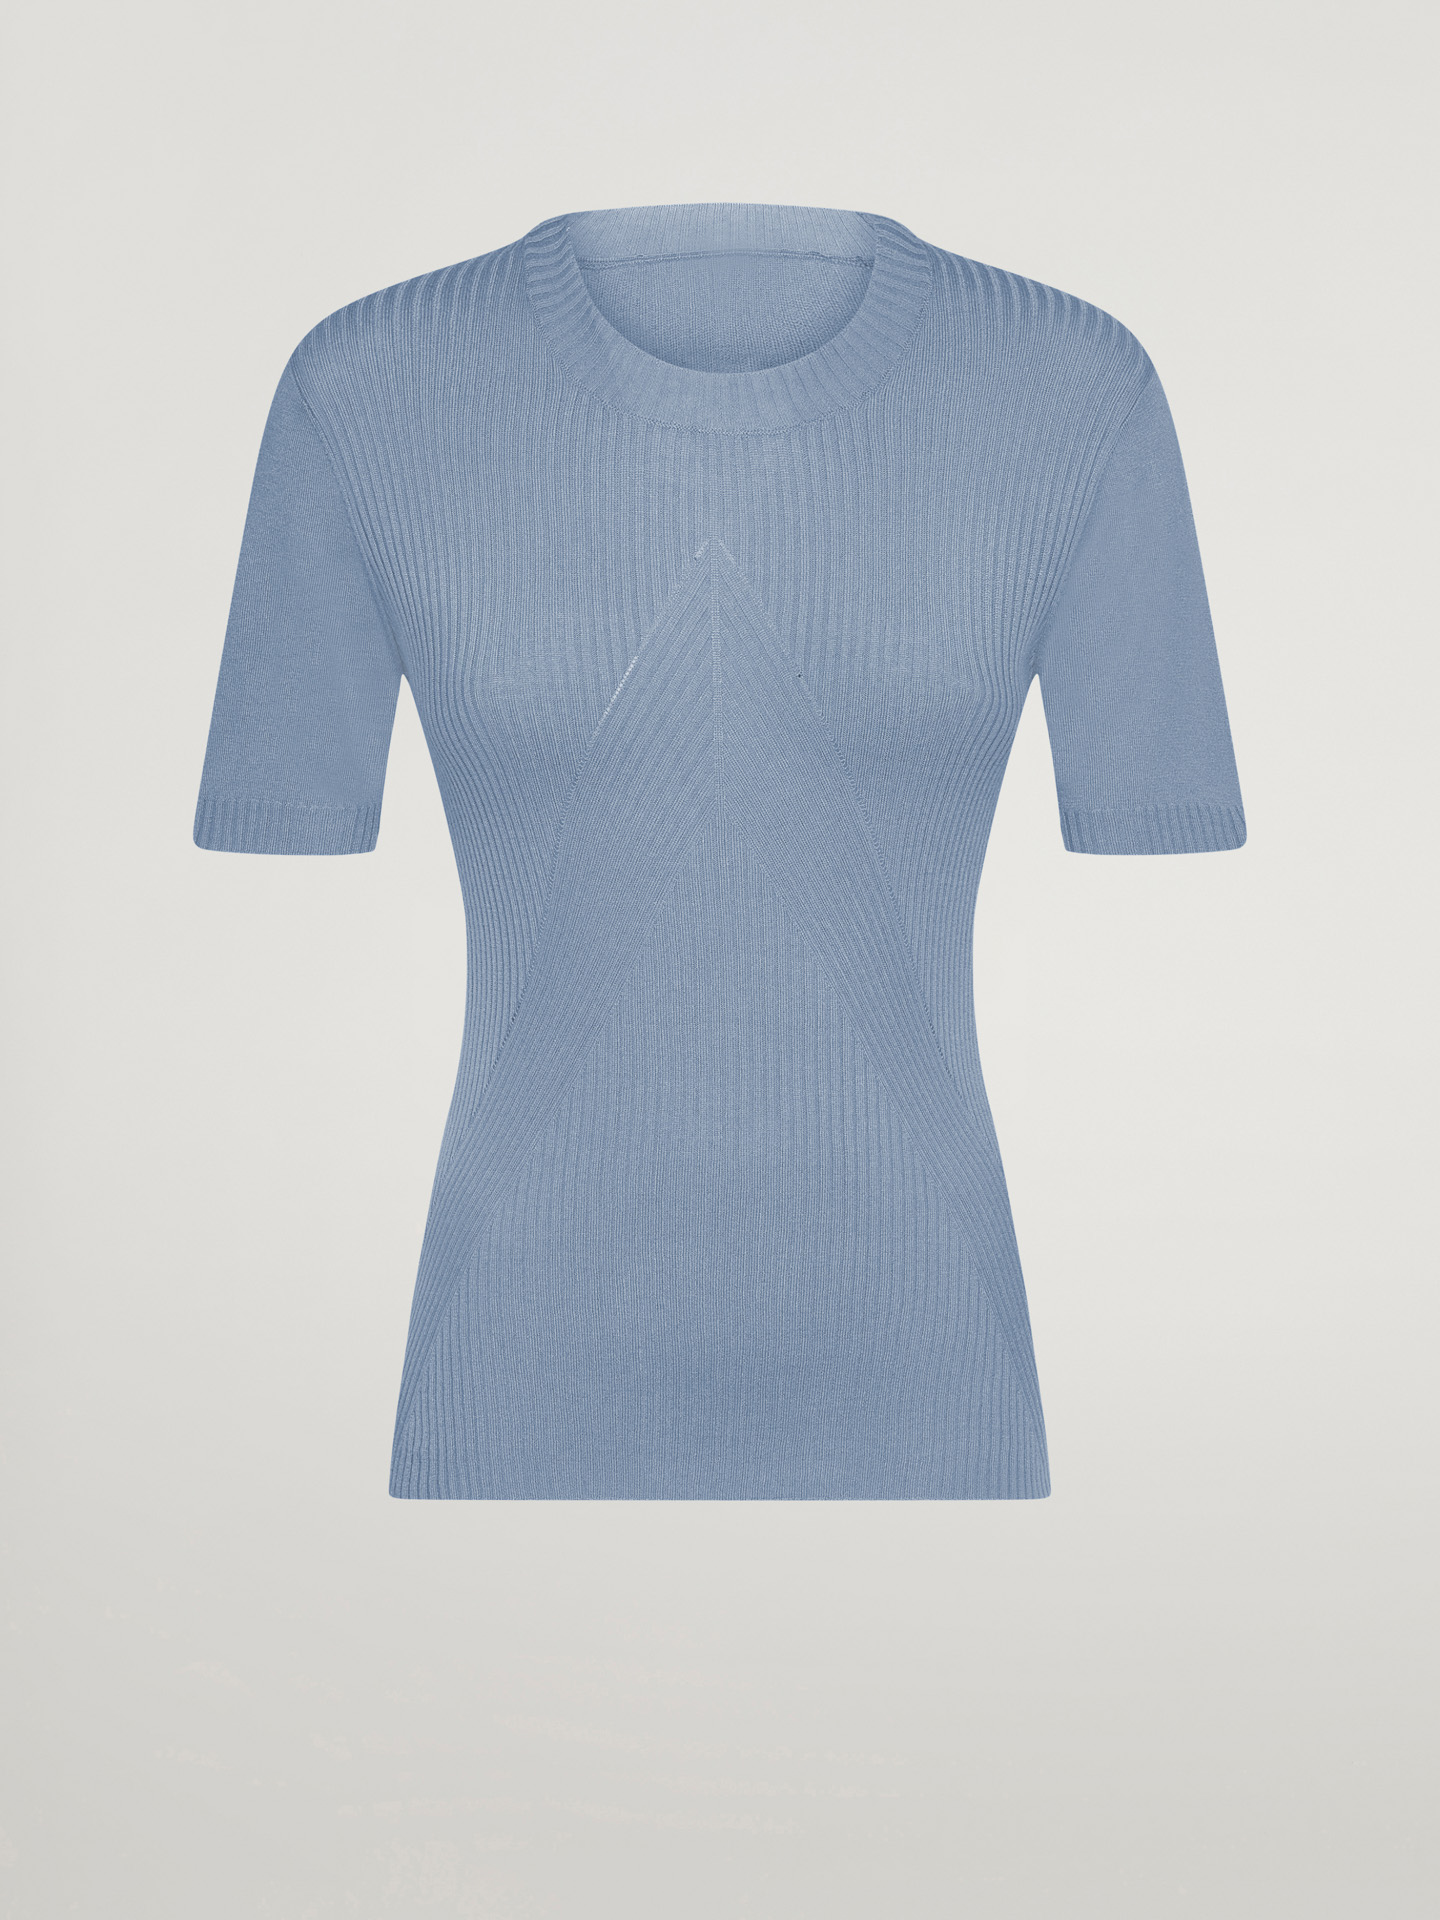 Wolford - Cashmere Top Short Sleeves, Frau, tempest, Größe: S günstig online kaufen